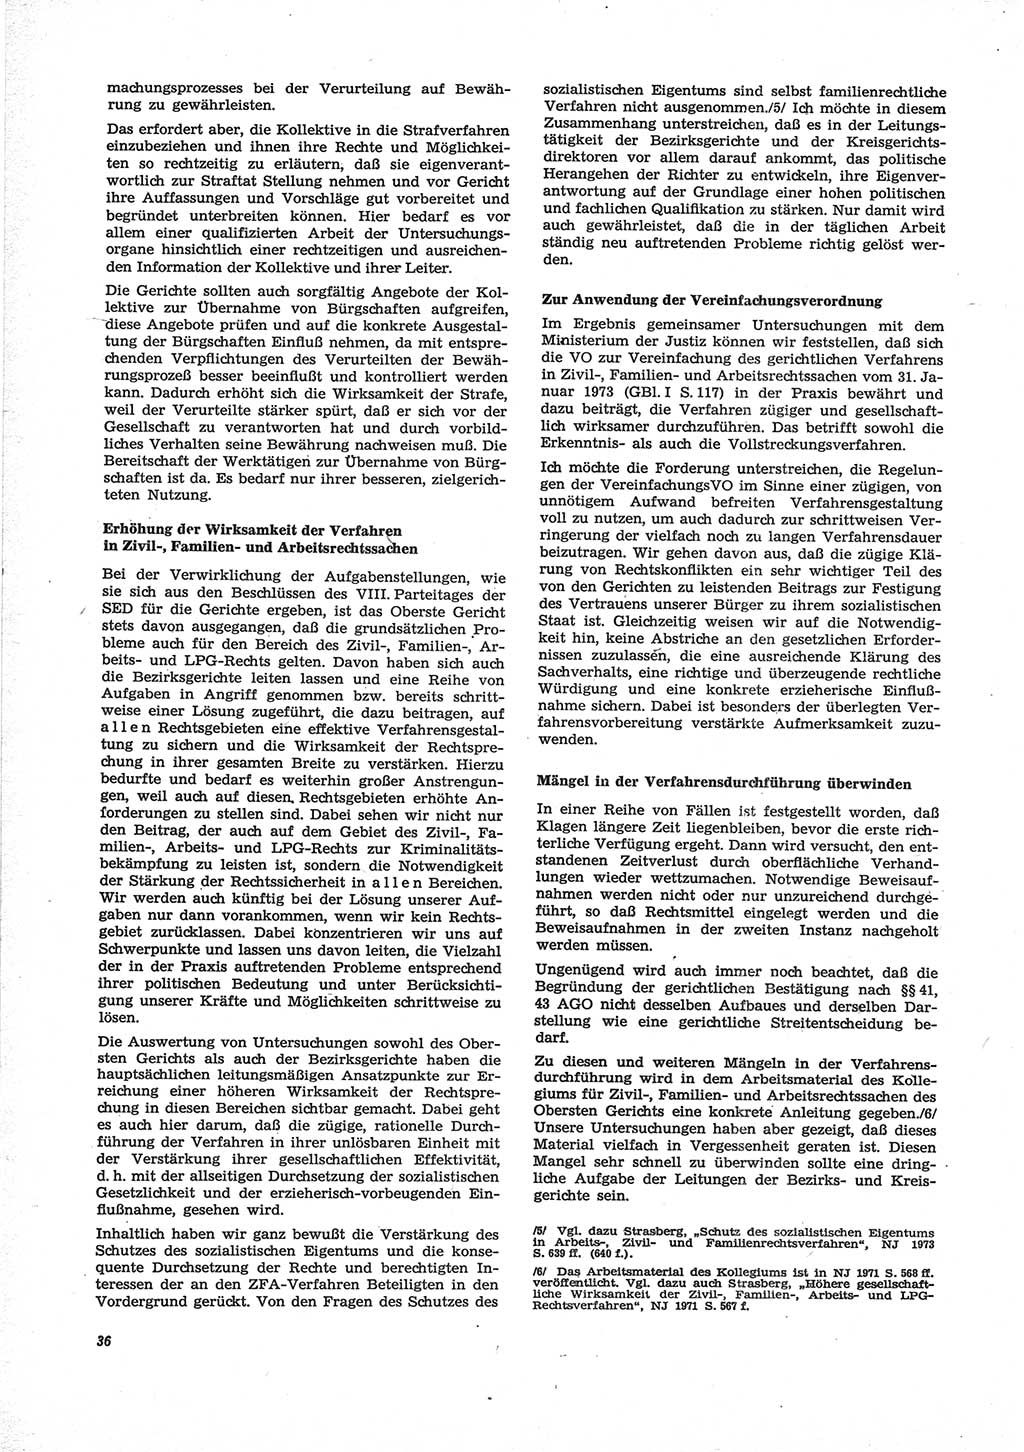 Neue Justiz (NJ), Zeitschrift für Recht und Rechtswissenschaft [Deutsche Demokratische Republik (DDR)], 28. Jahrgang 1974, Seite 36 (NJ DDR 1974, S. 36)